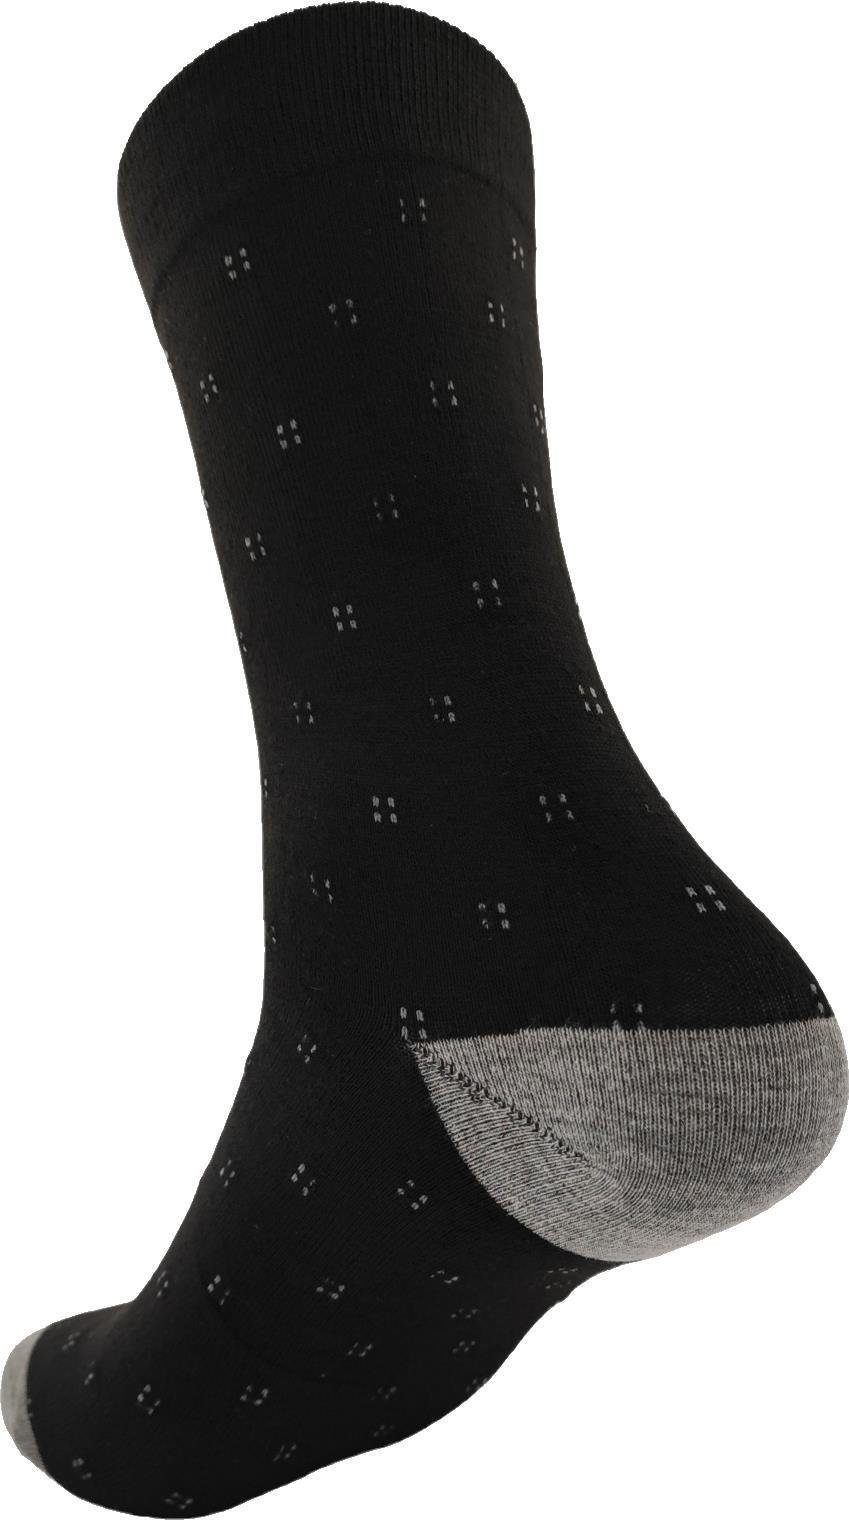 EloModa Basicsocken 12 Muster klassischer (12-Paar) Mix6 Form Sport Paar Freizeit Herren Socken